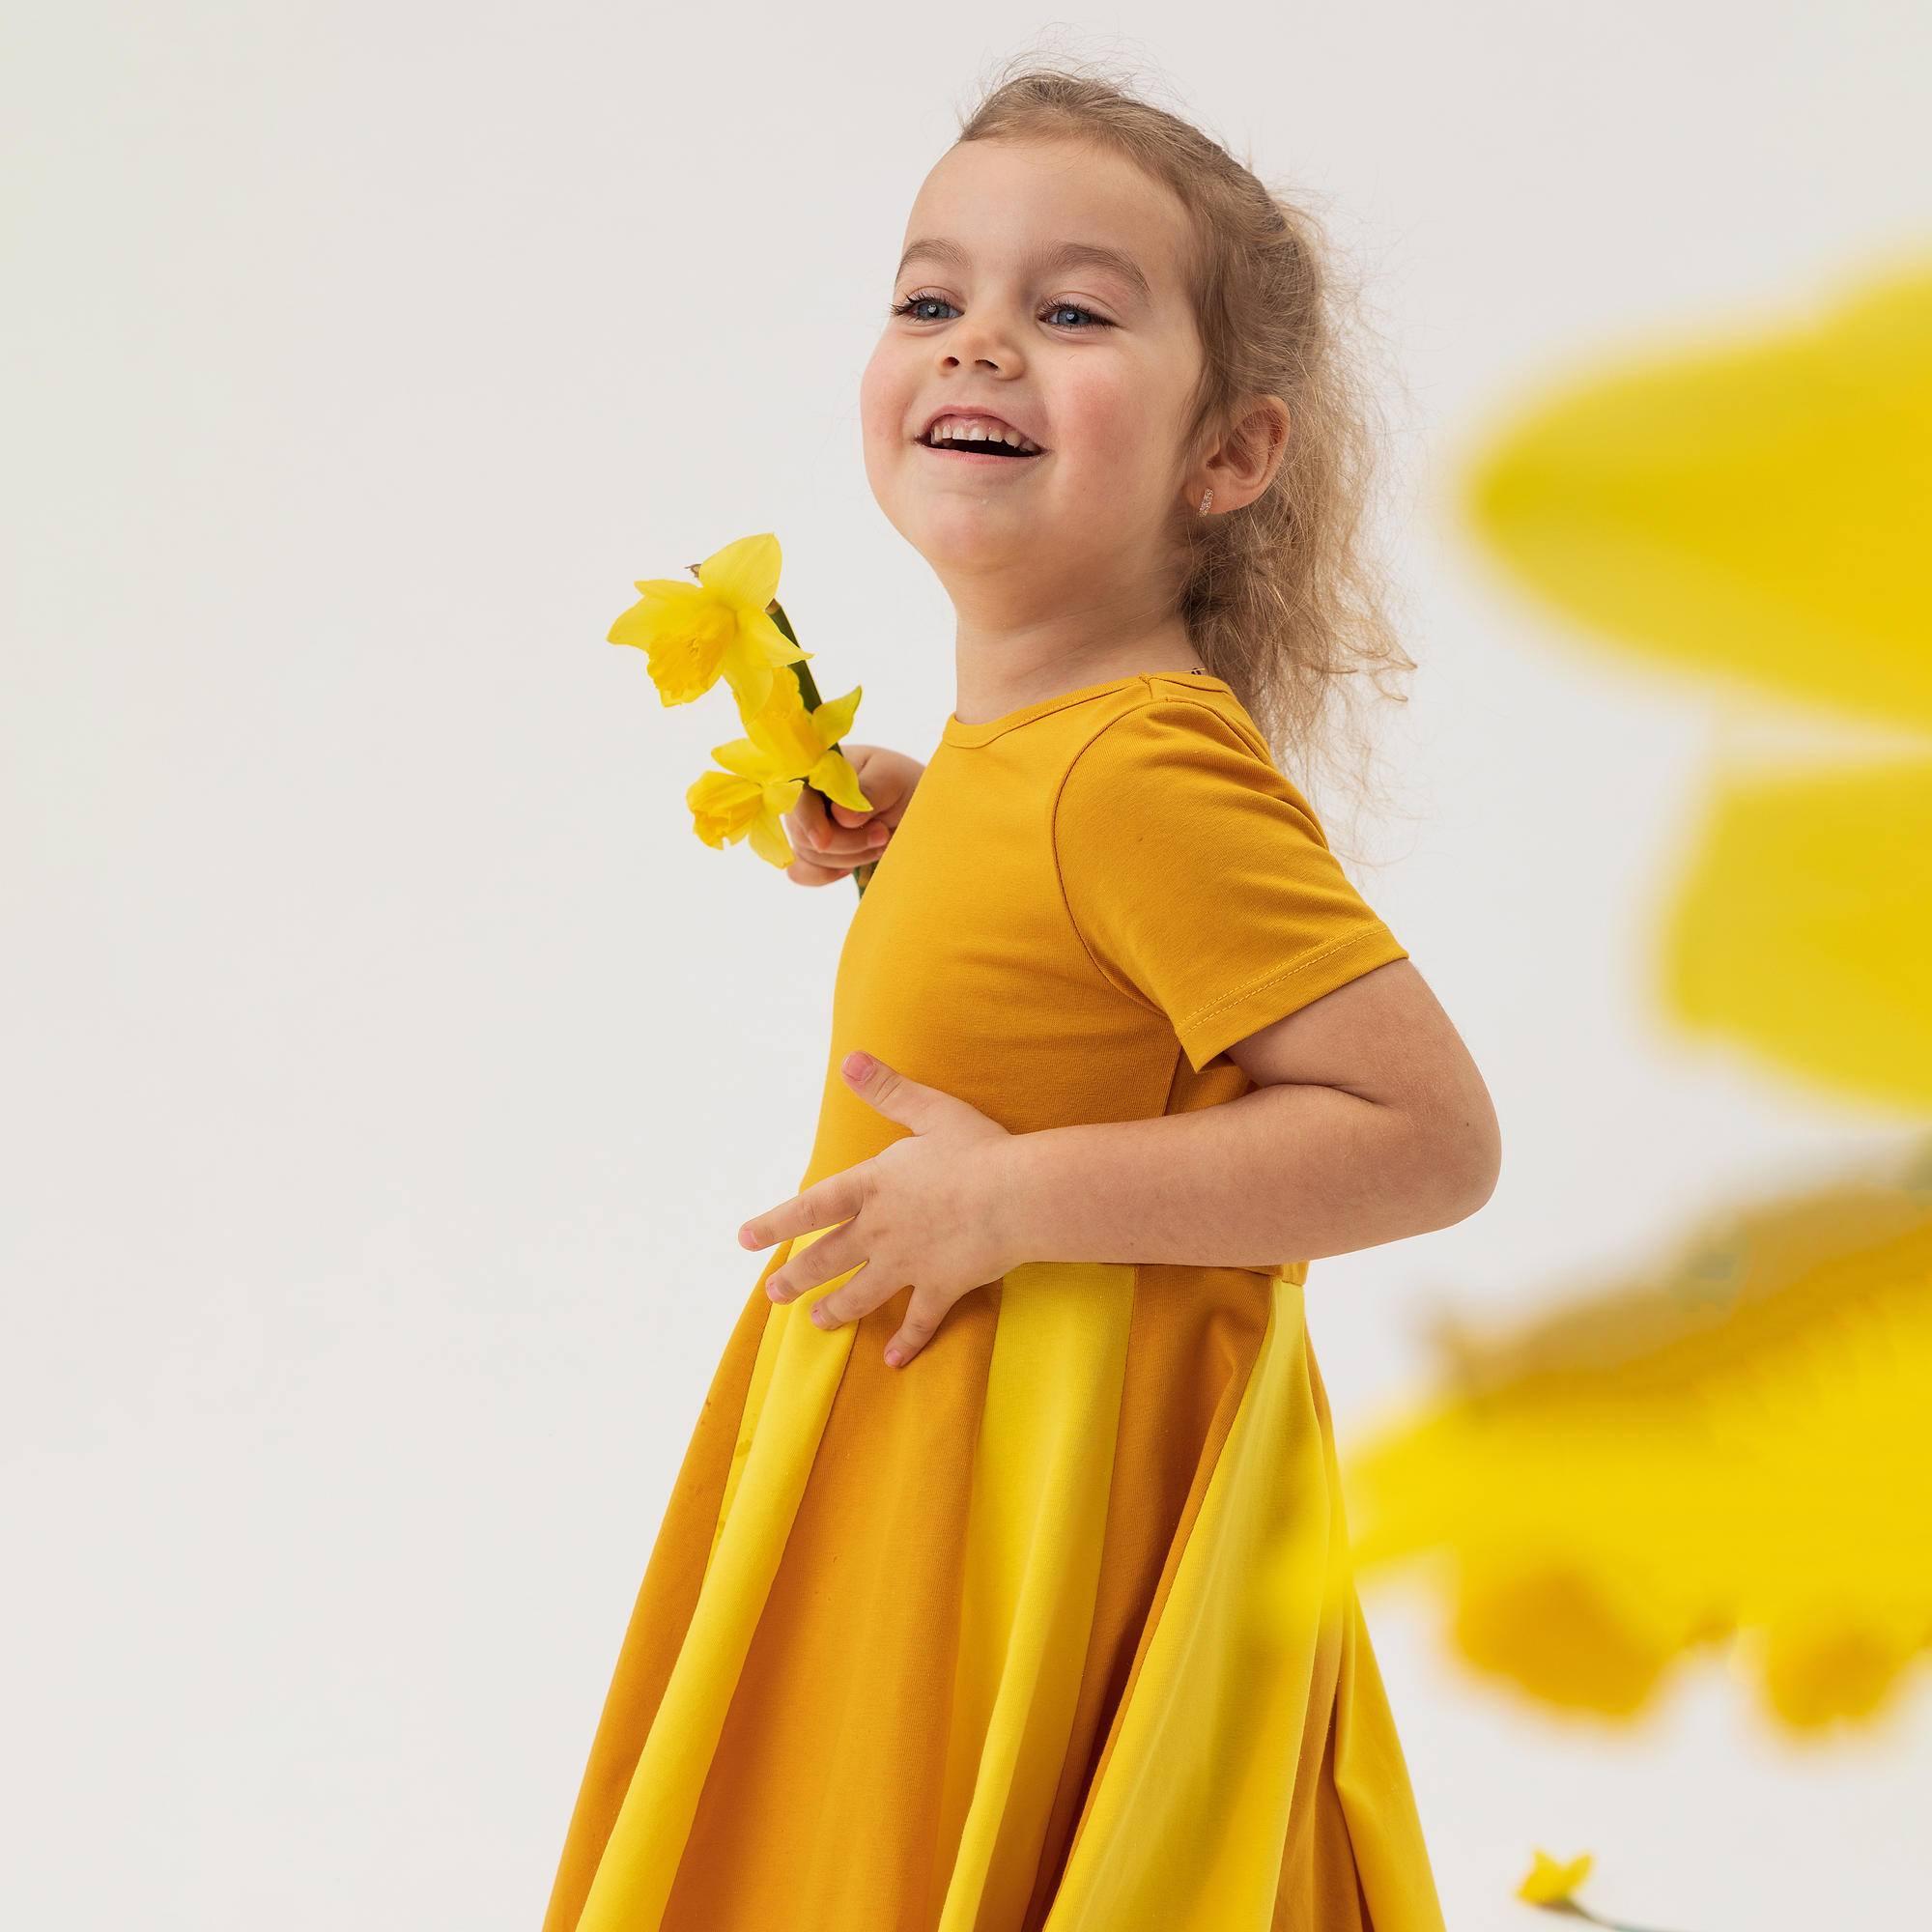 Musztardowo-żółta sukienka z kolorową falbaną